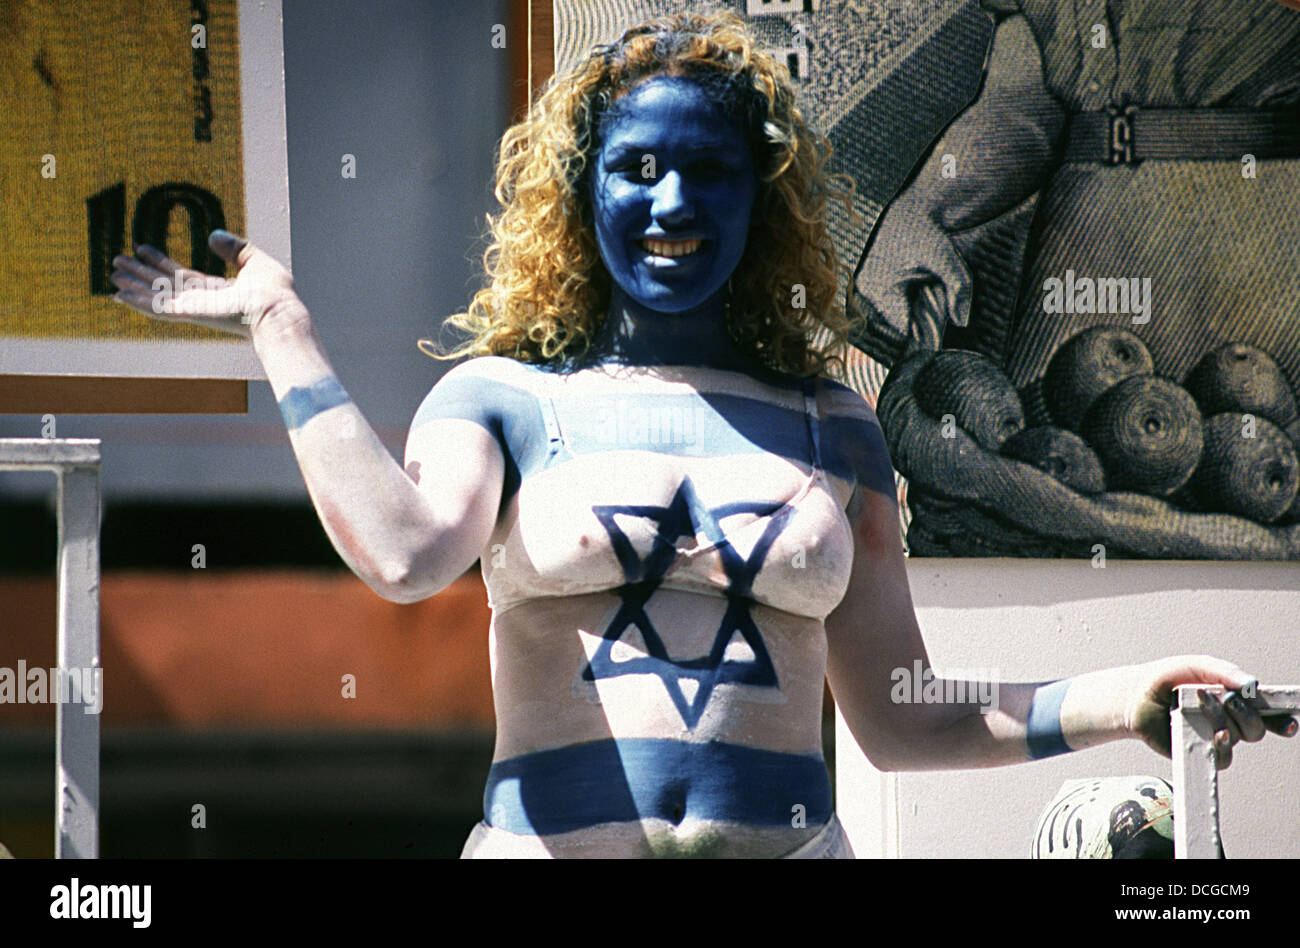 Le drapeau national israélien peint sur une jeune femme au cours de commémorations de l'indépendance à Tel Aviv, Israël Banque D'Images